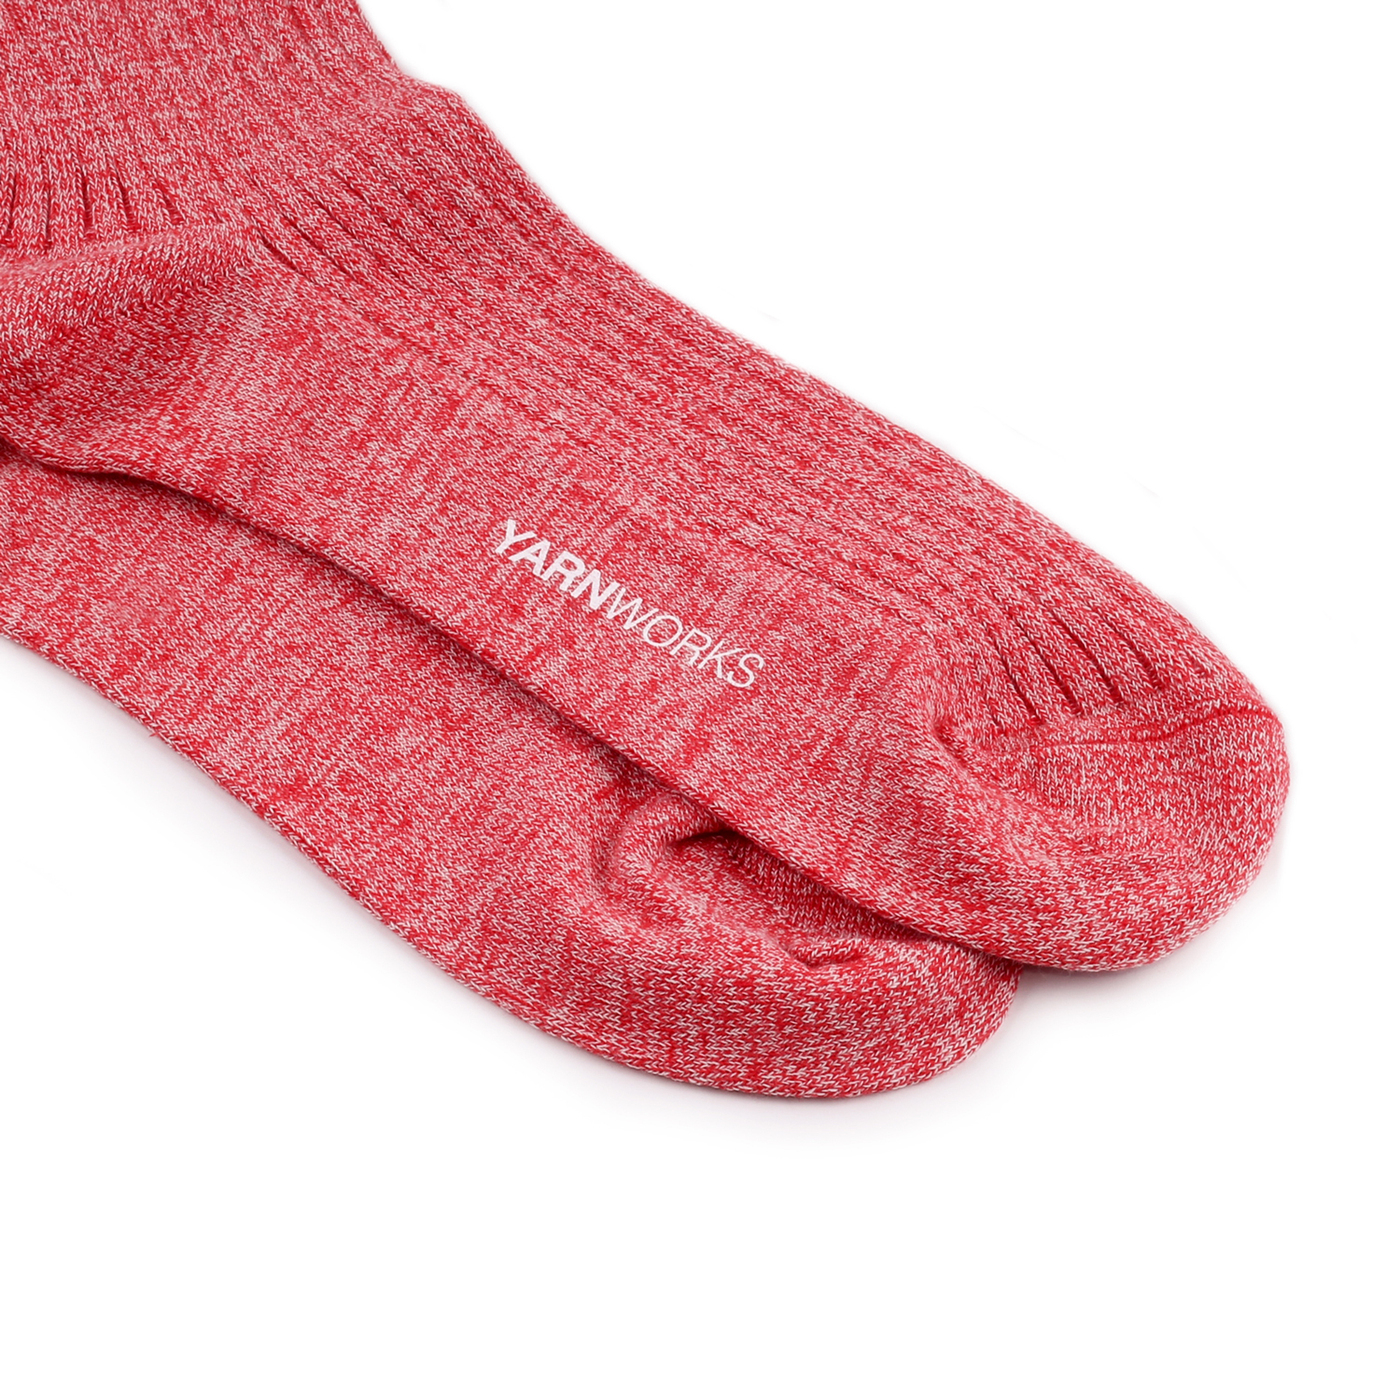 Носочка пряжа. Носочная пряжа носки. TC 16 Yarn for Socks.